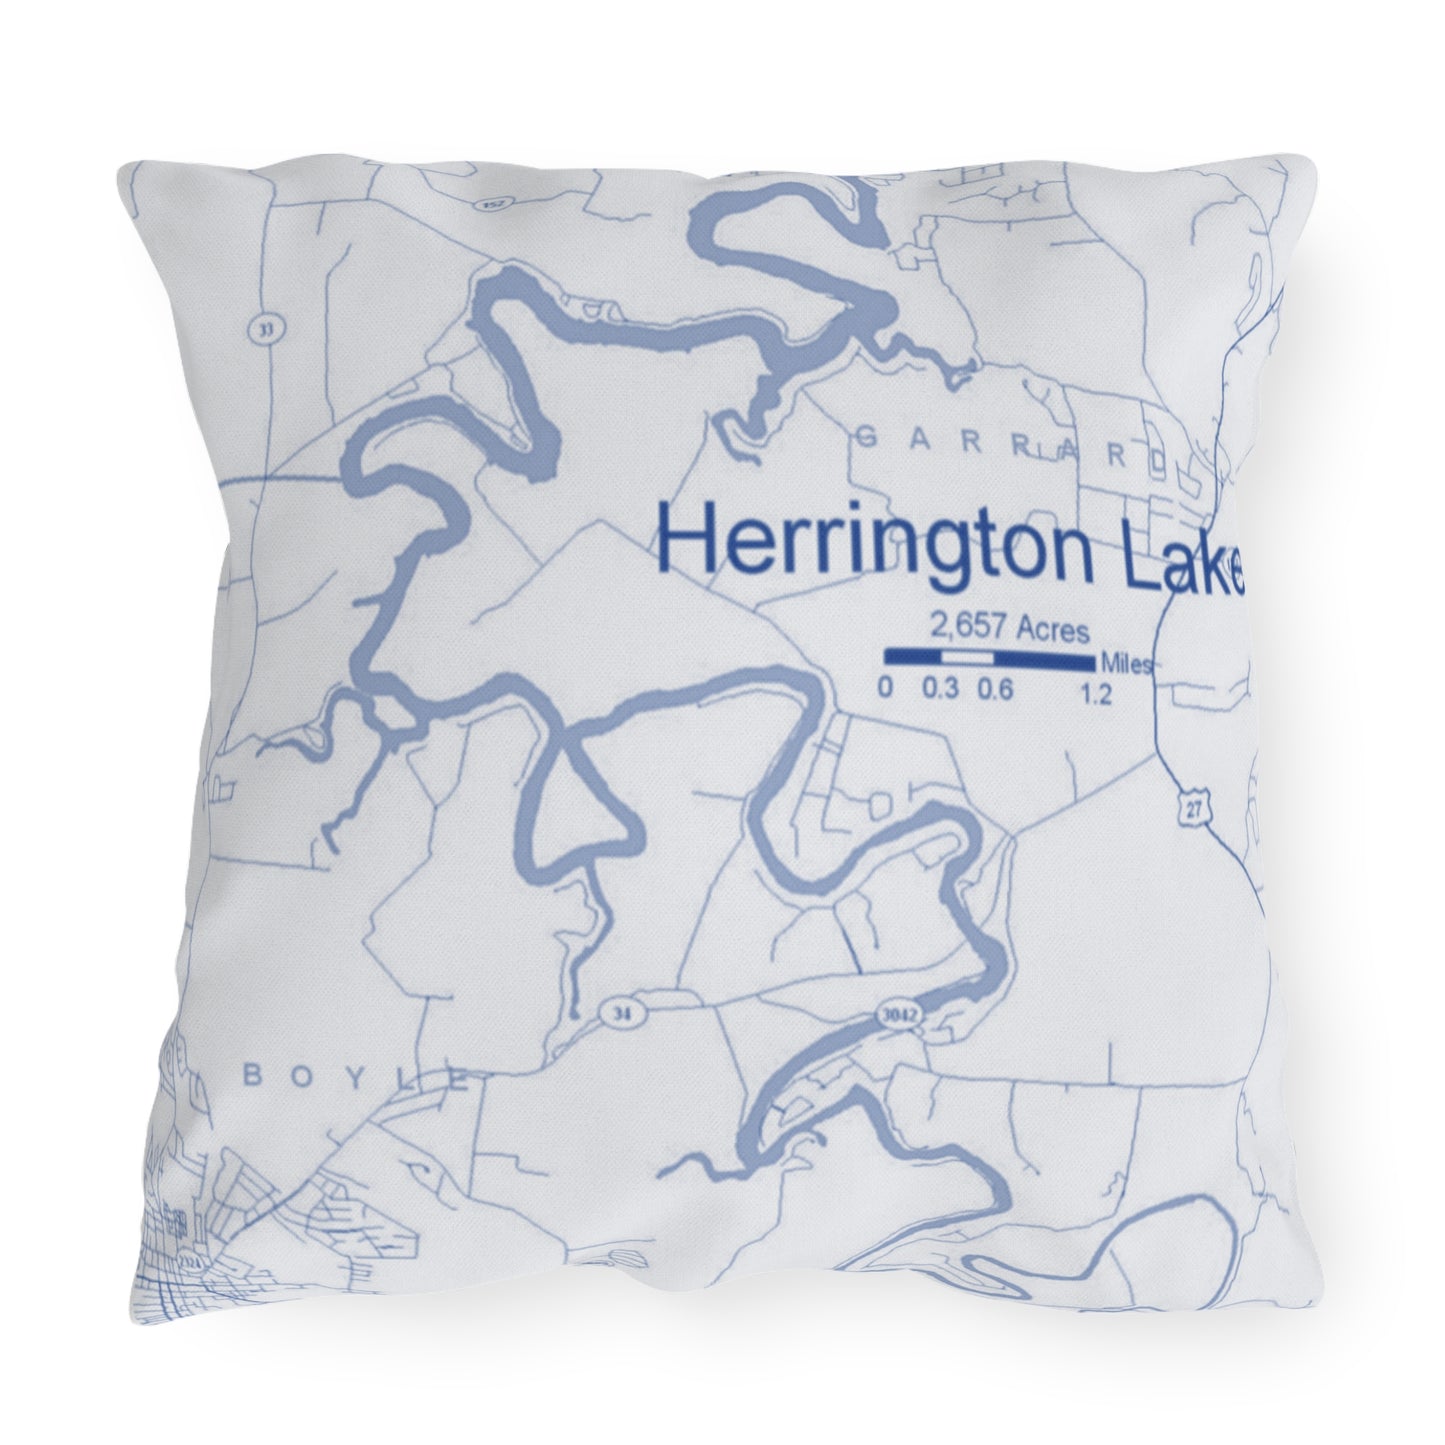 Herrington Lake Map Outdoor Pillows, White